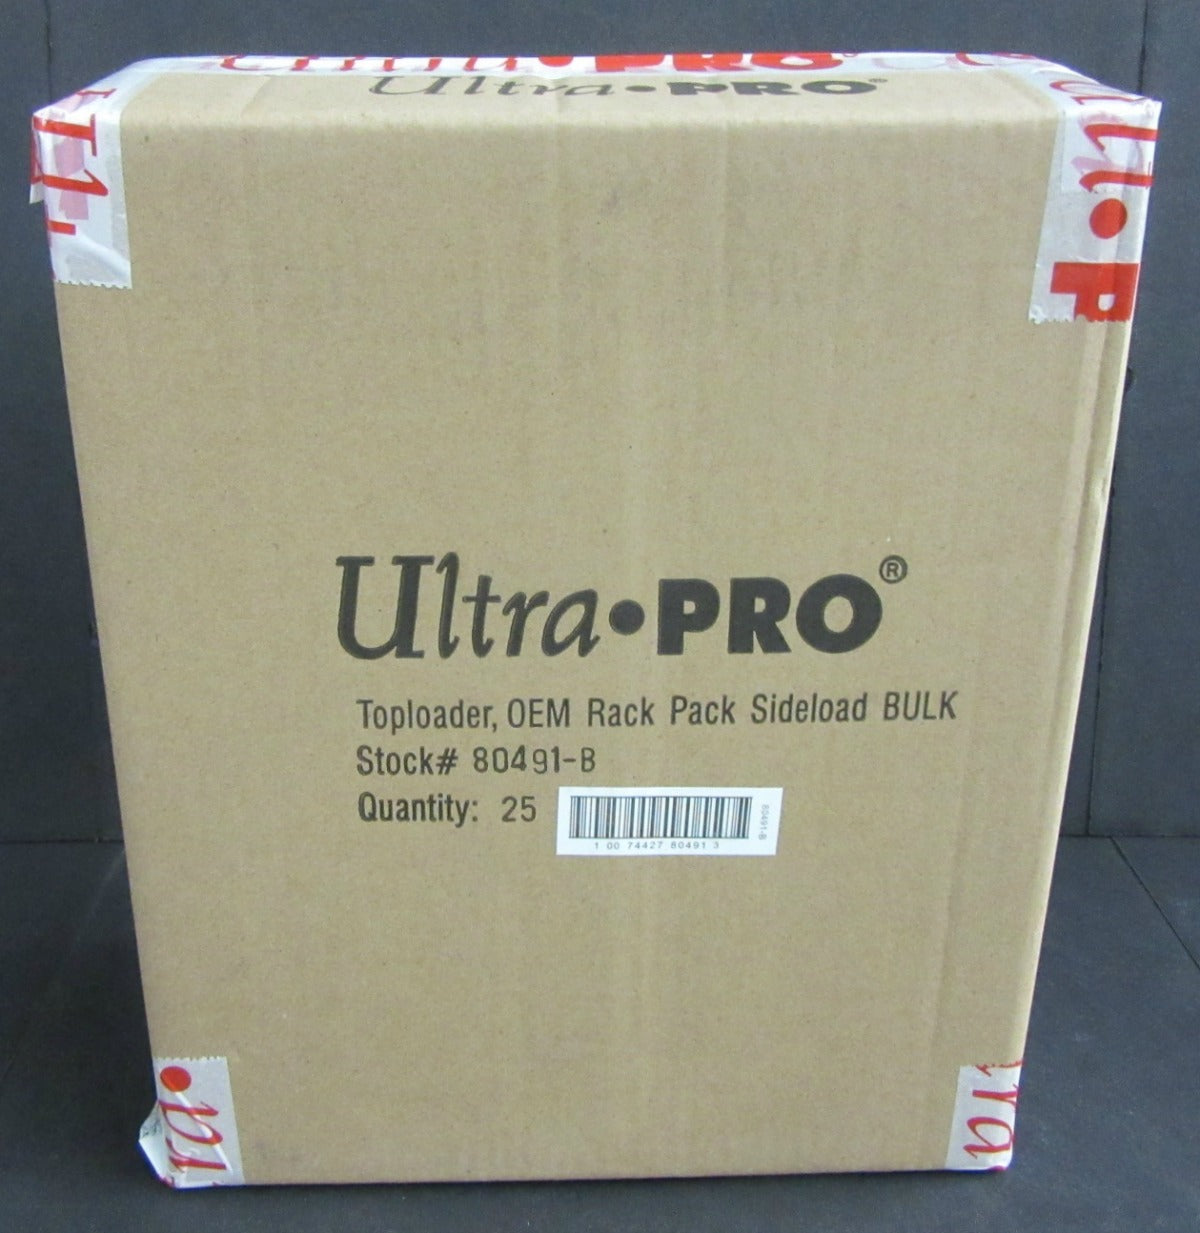 Ultra Pro Toploader Rack Pack Holder Pack (5)